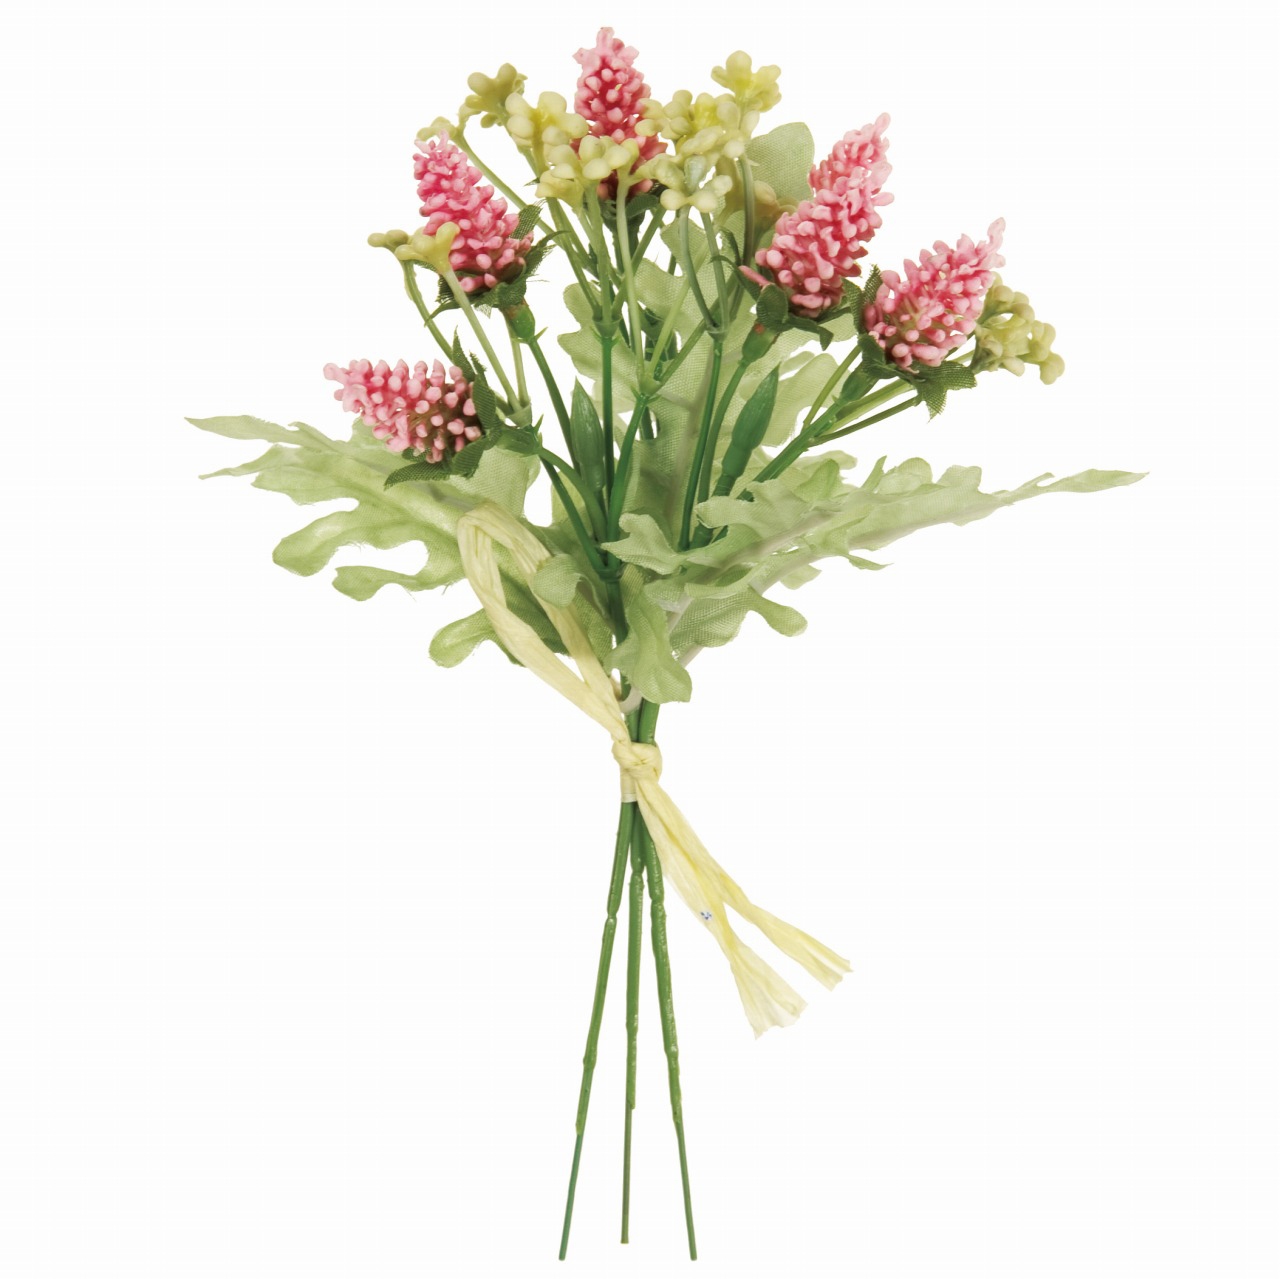 マイフラ 通販 Magiq アキレアベロニカ ピック ピンク アーティフィシャルフラワー 造花 Fm 002 1束 小花 ピンク Magiq アーティフィシャルフラワー 造花 全国にmagiq 花器 花資材などをお届けします